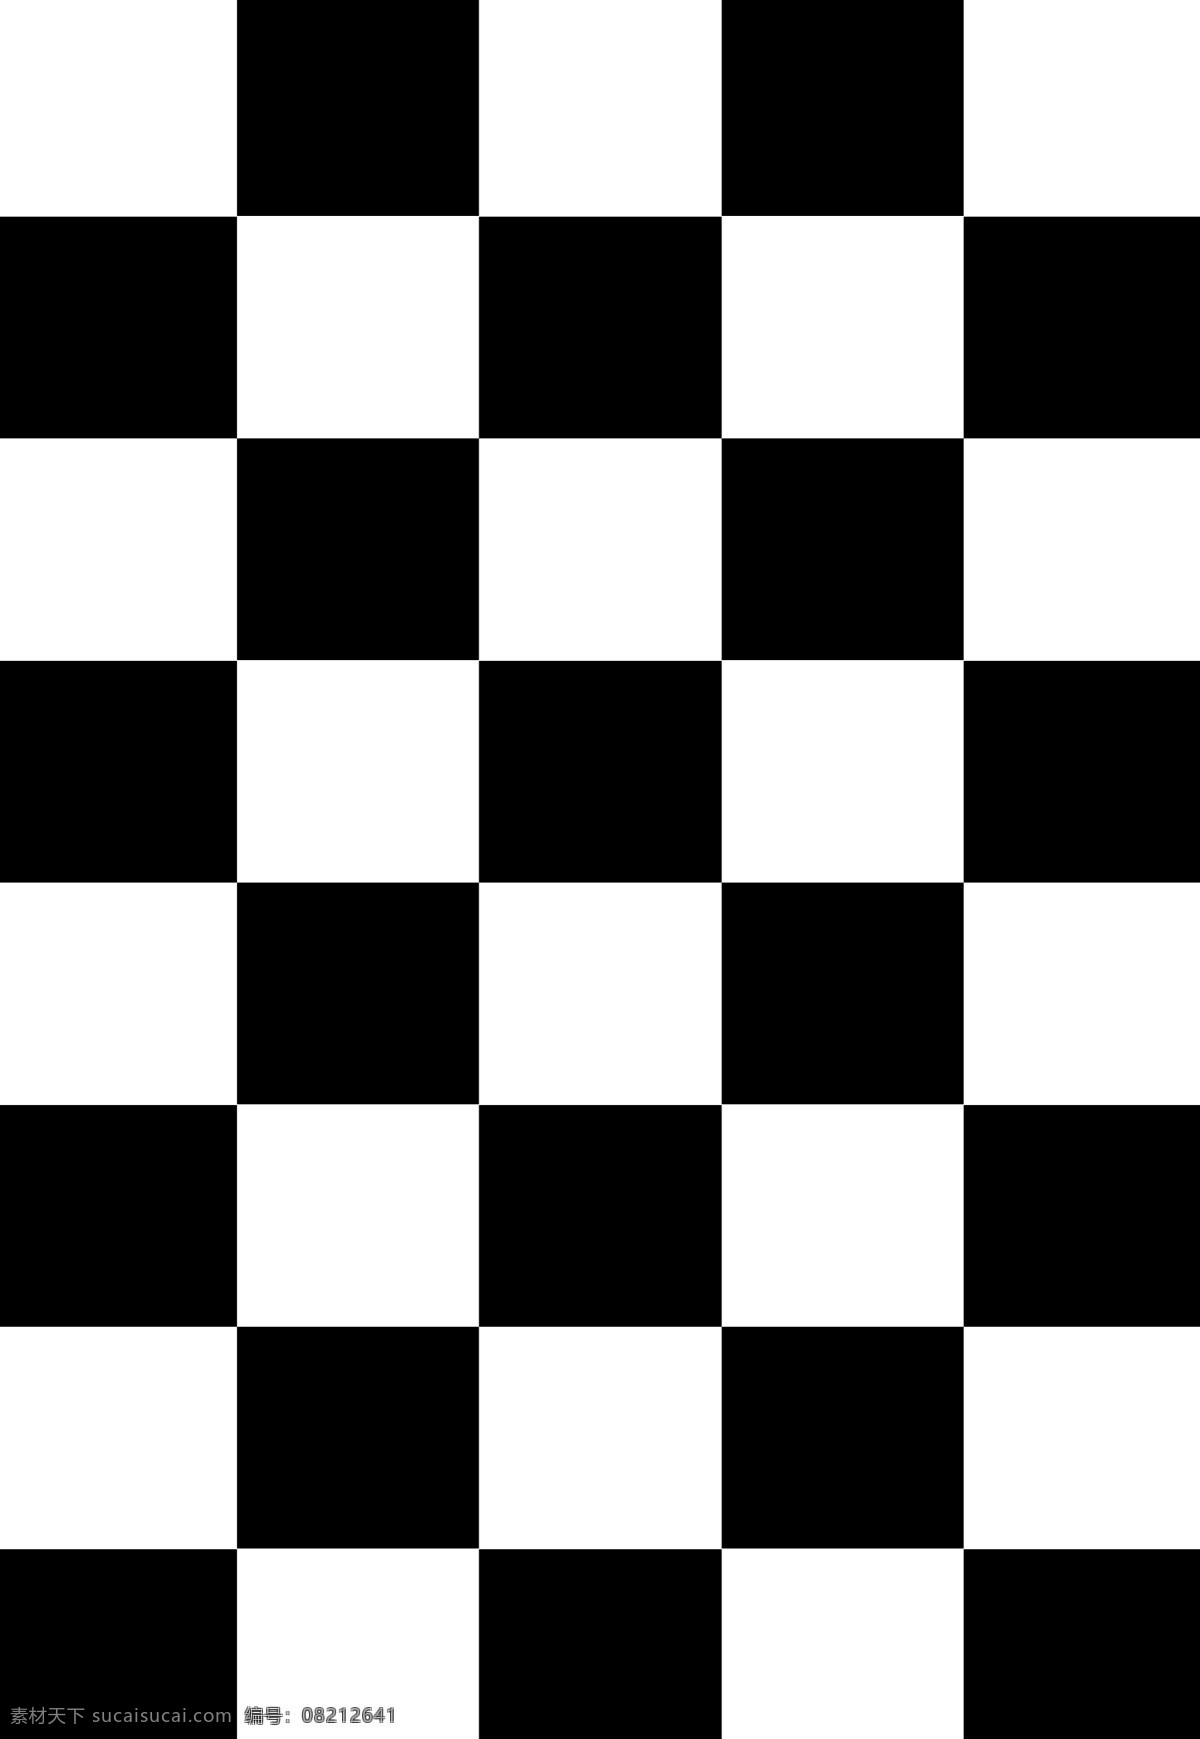 黑白 格子 底纹 大图 国际象棋 招贴画 海报 背景底纹 底纹边框